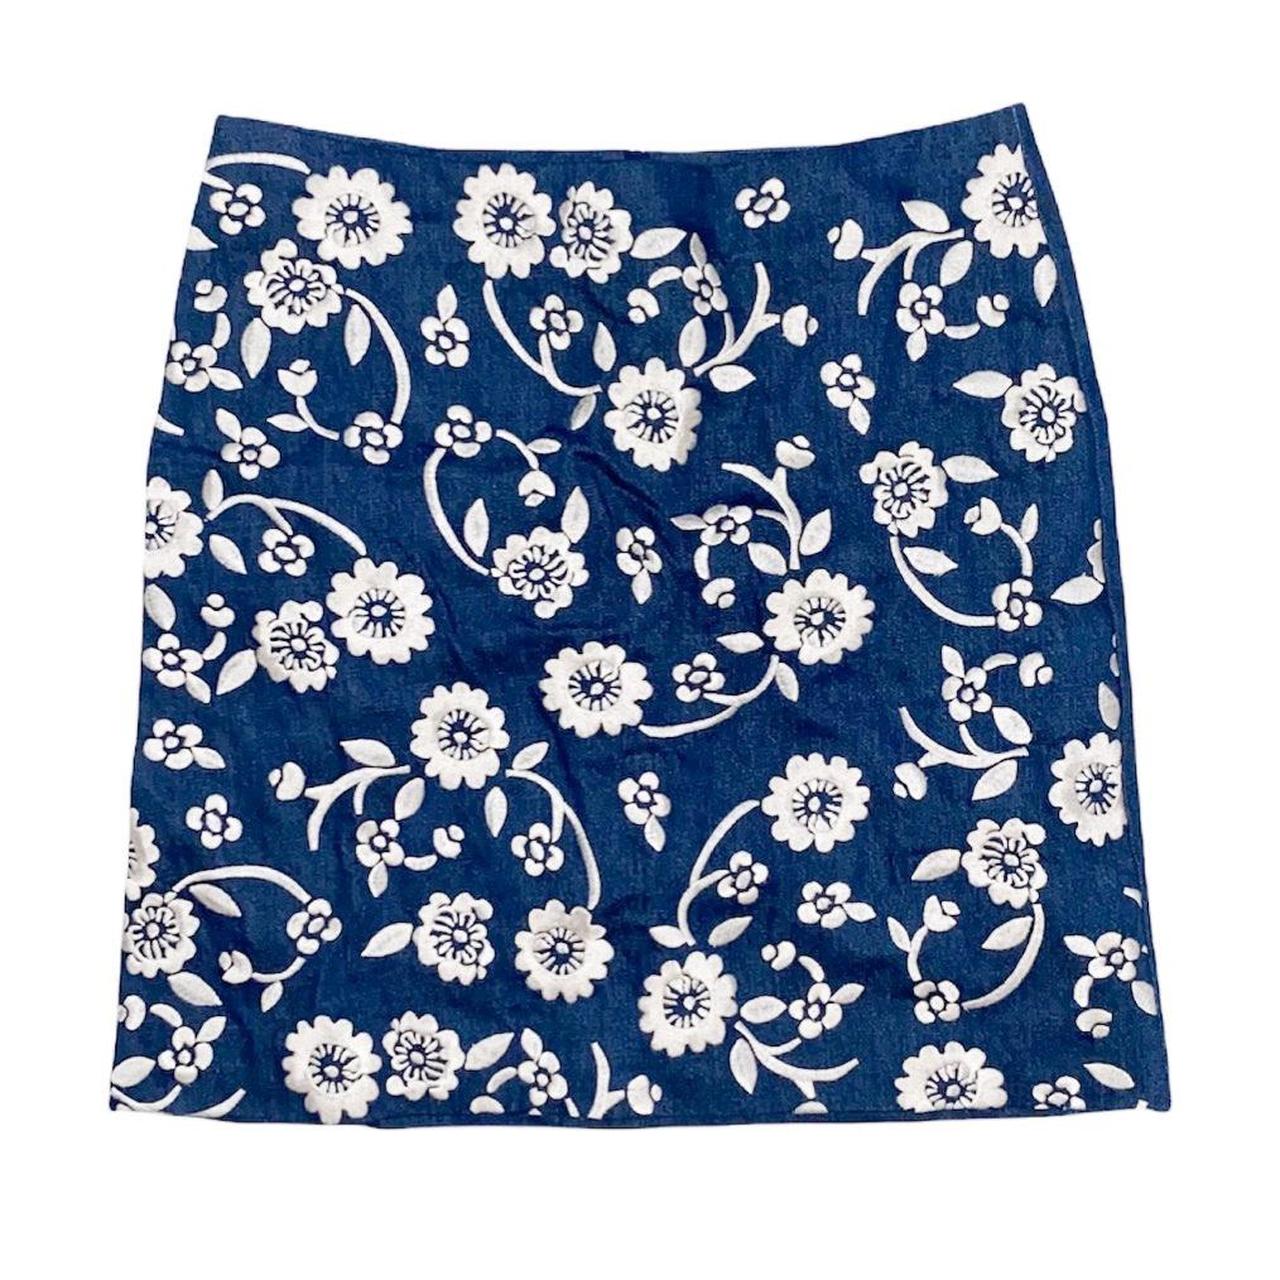 Boden Floral Skirt | Navy Blue/Cream White |... - Depop